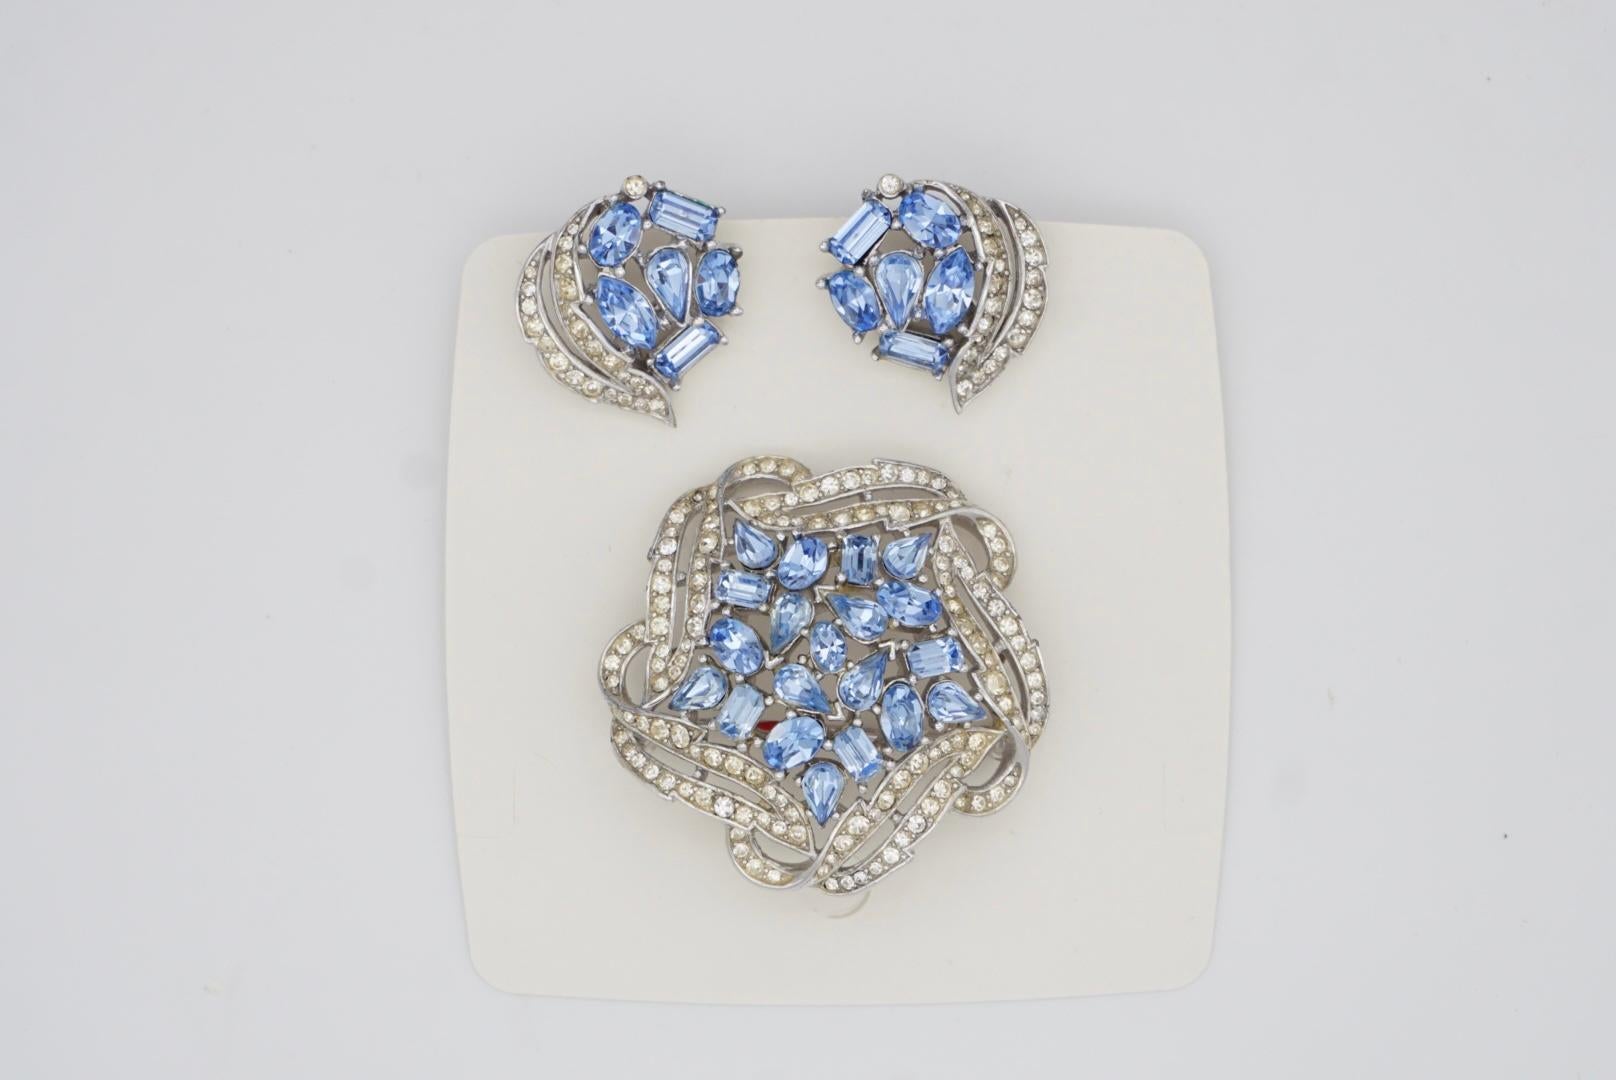 Crown Trifari Vintage 1950s Sky Blue Crystals Jewellery Set Earrings Brooch For Sale 4